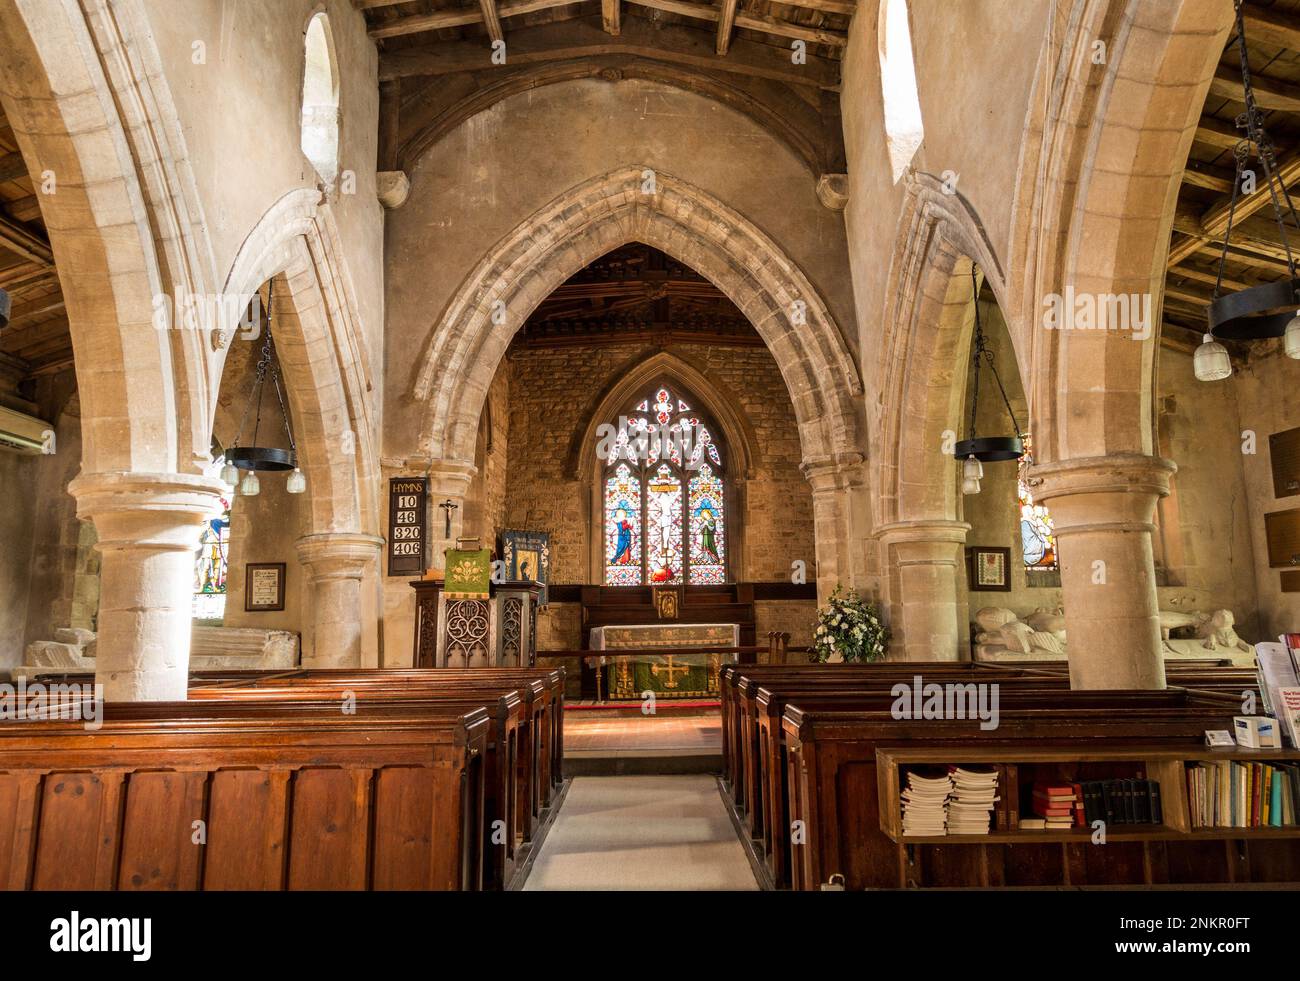 L'allée centrale / nef, ragoûts et autel de la petite église paroissiale de Sainte Marie la Vierge, Burrough on the Hill Leicestershire, Angleterre, Royaume-Uni Banque D'Images